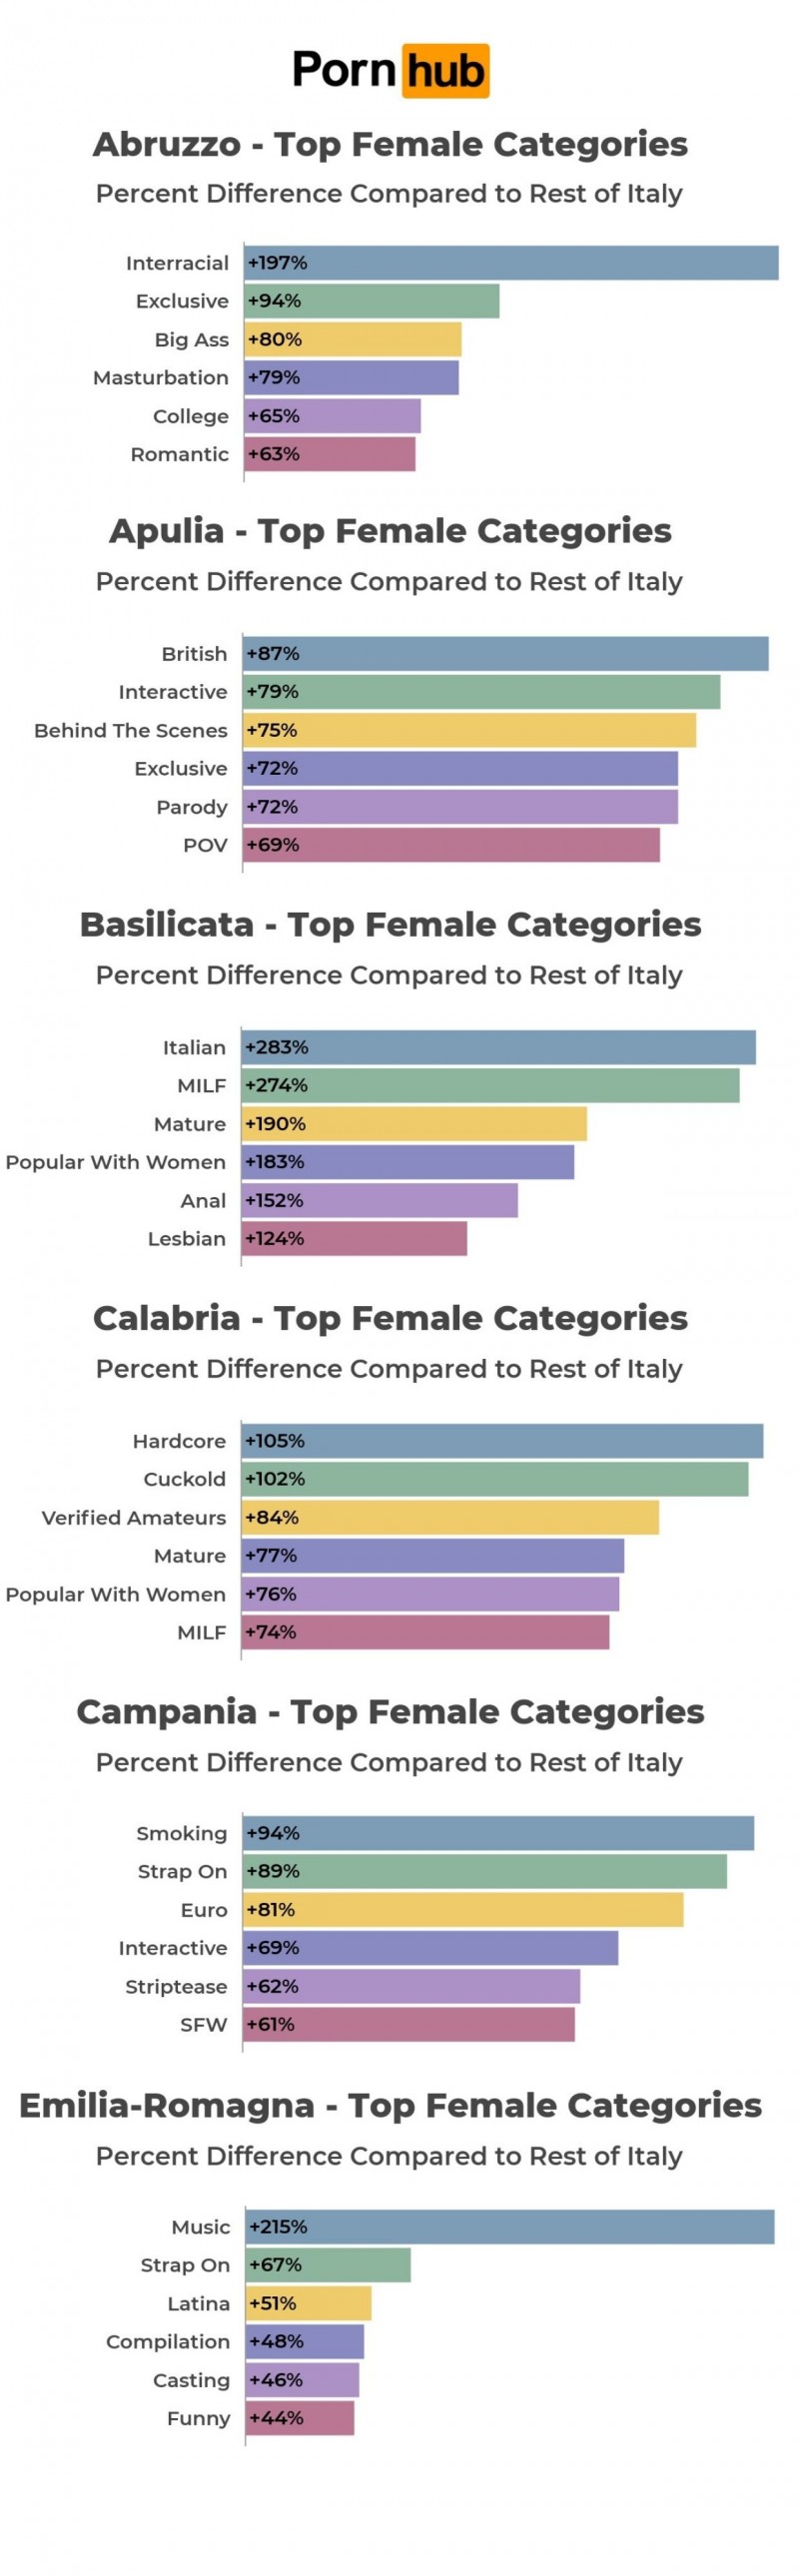 lista de categorías de vídeos pornográficos más vistos por las mujeres en italia divididos por región